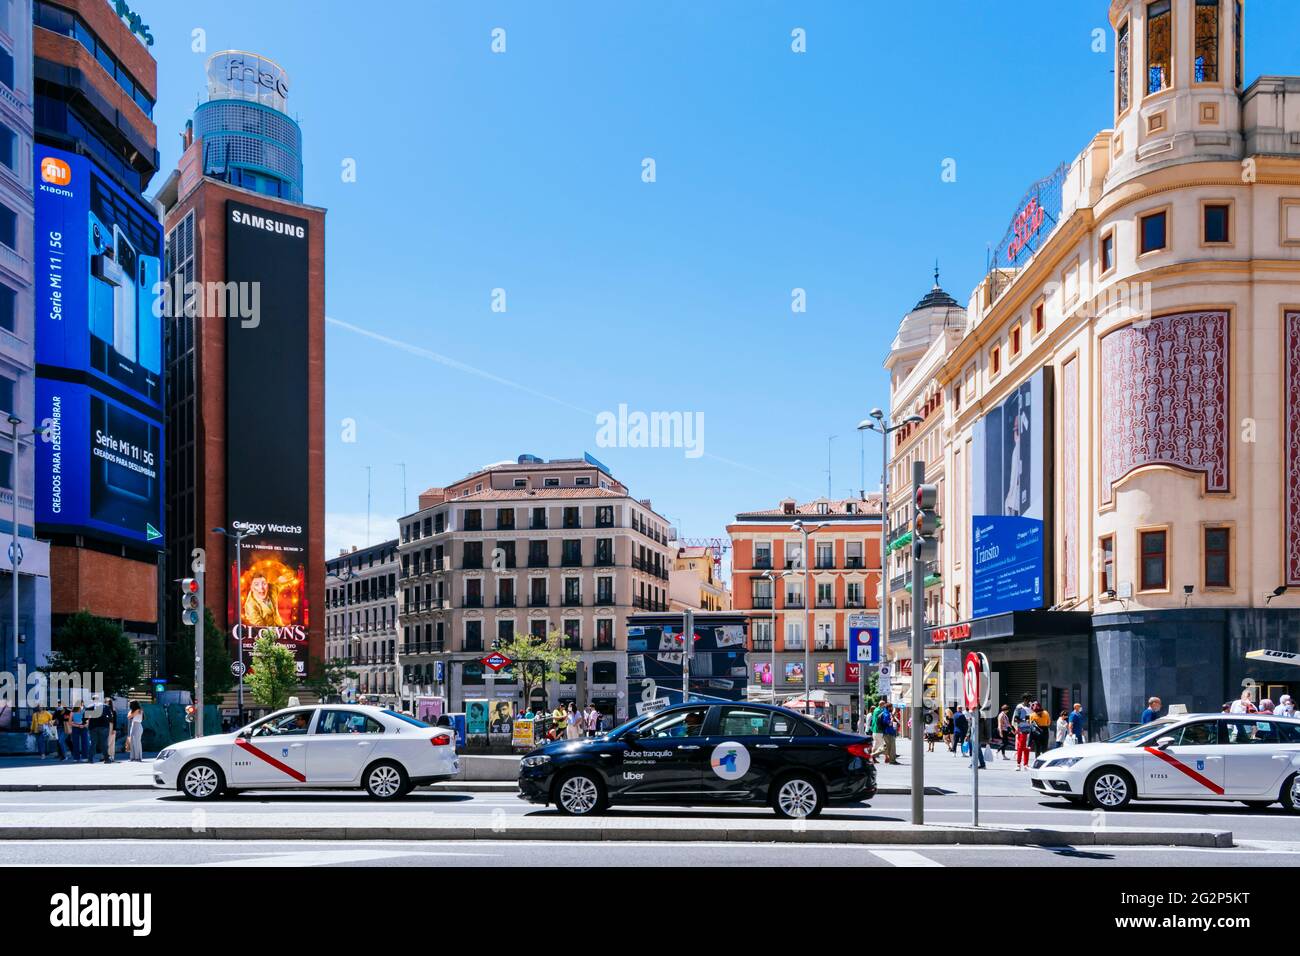 Der Callao-Platz, Plaza del Callao, während der COVID-19-Pandemie. Das Hotel liegt im Zentrum der spanischen Hauptstadt Madrid, in einem sehr kommerziellen Viertel von Stockfoto